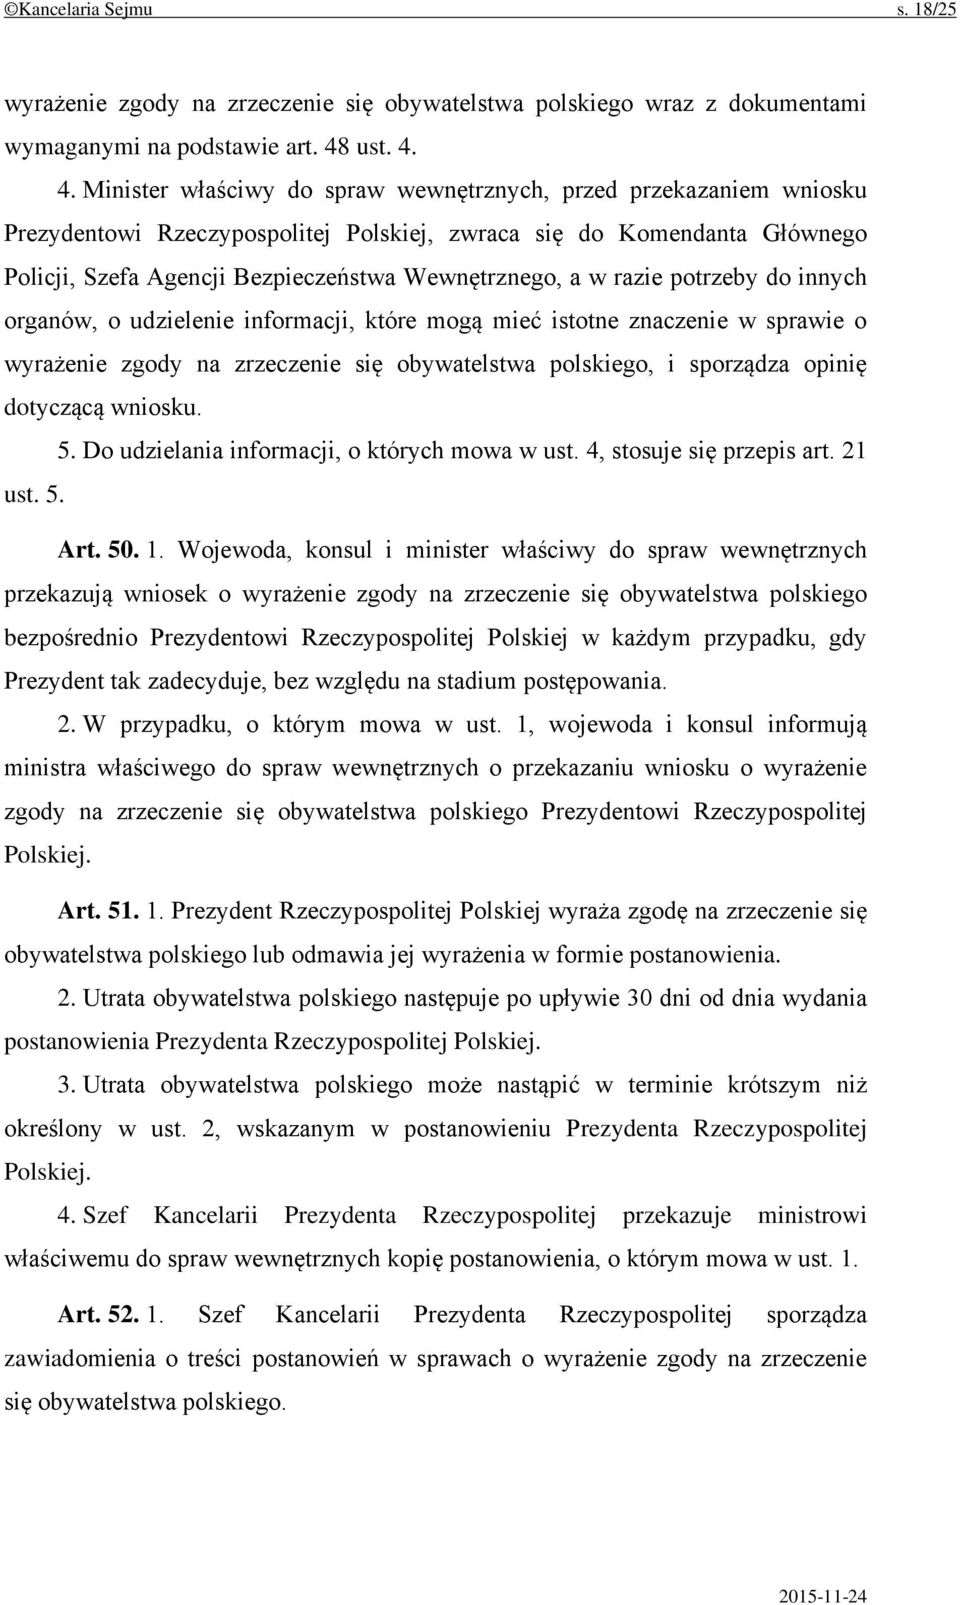 4. Minister właściwy do spraw wewnętrznych, przed przekazaniem wniosku Prezydentowi Rzeczypospolitej Polskiej, zwraca się do Komendanta Głównego Policji, Szefa Agencji Bezpieczeństwa Wewnętrznego, a